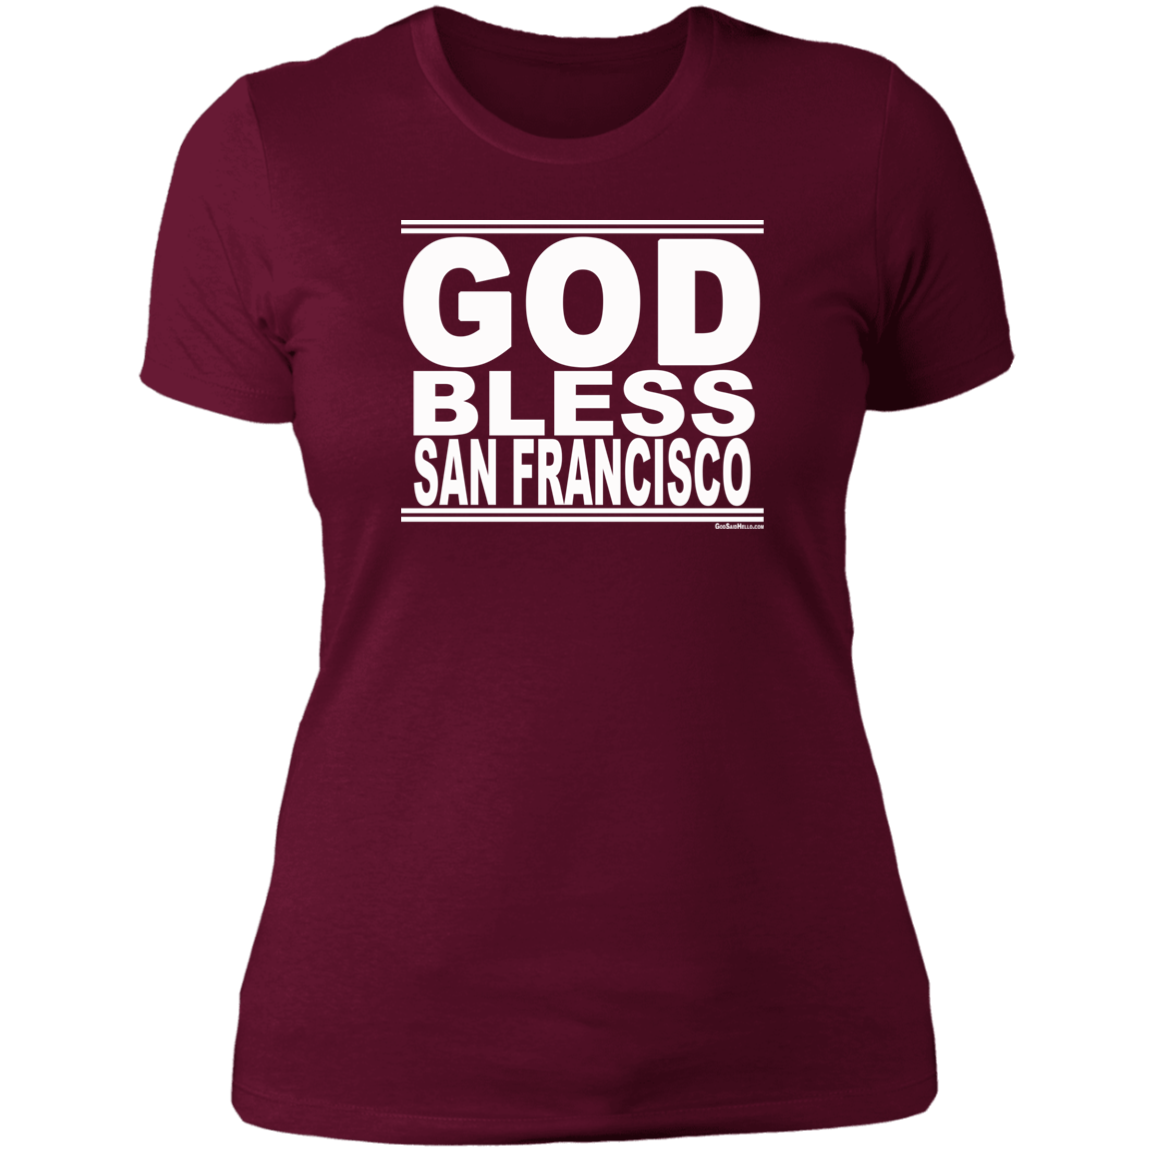 #GodBlessSanFrancisco - Women's Shortsleeve Tee